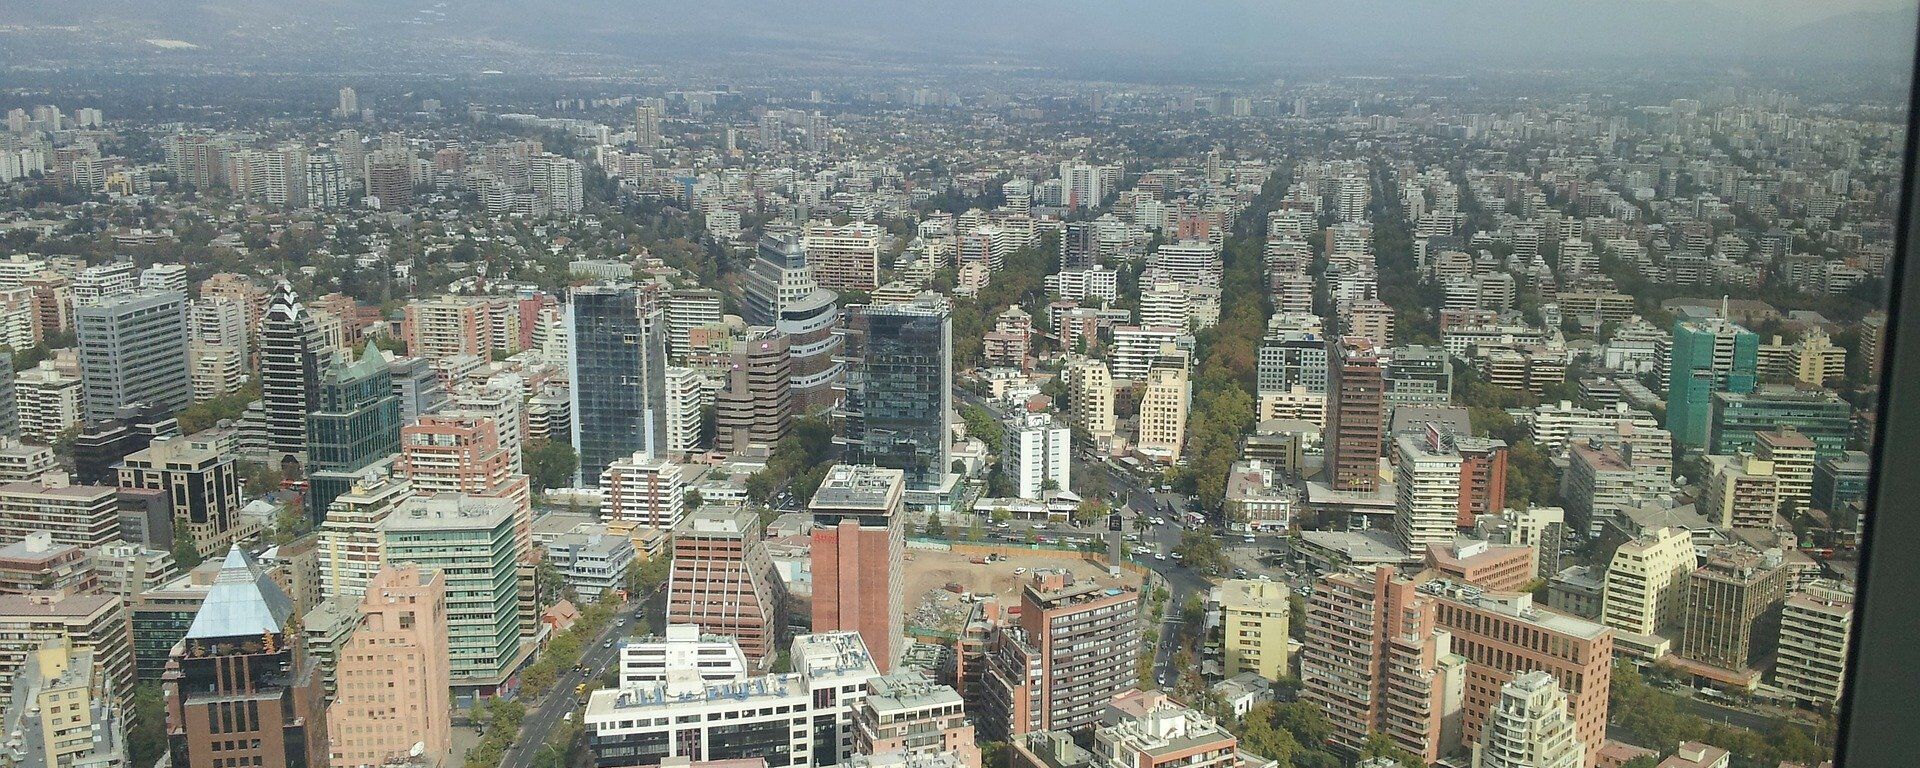 Santiago, la capital de Chile - Sputnik Mundo, 1920, 29.07.2020